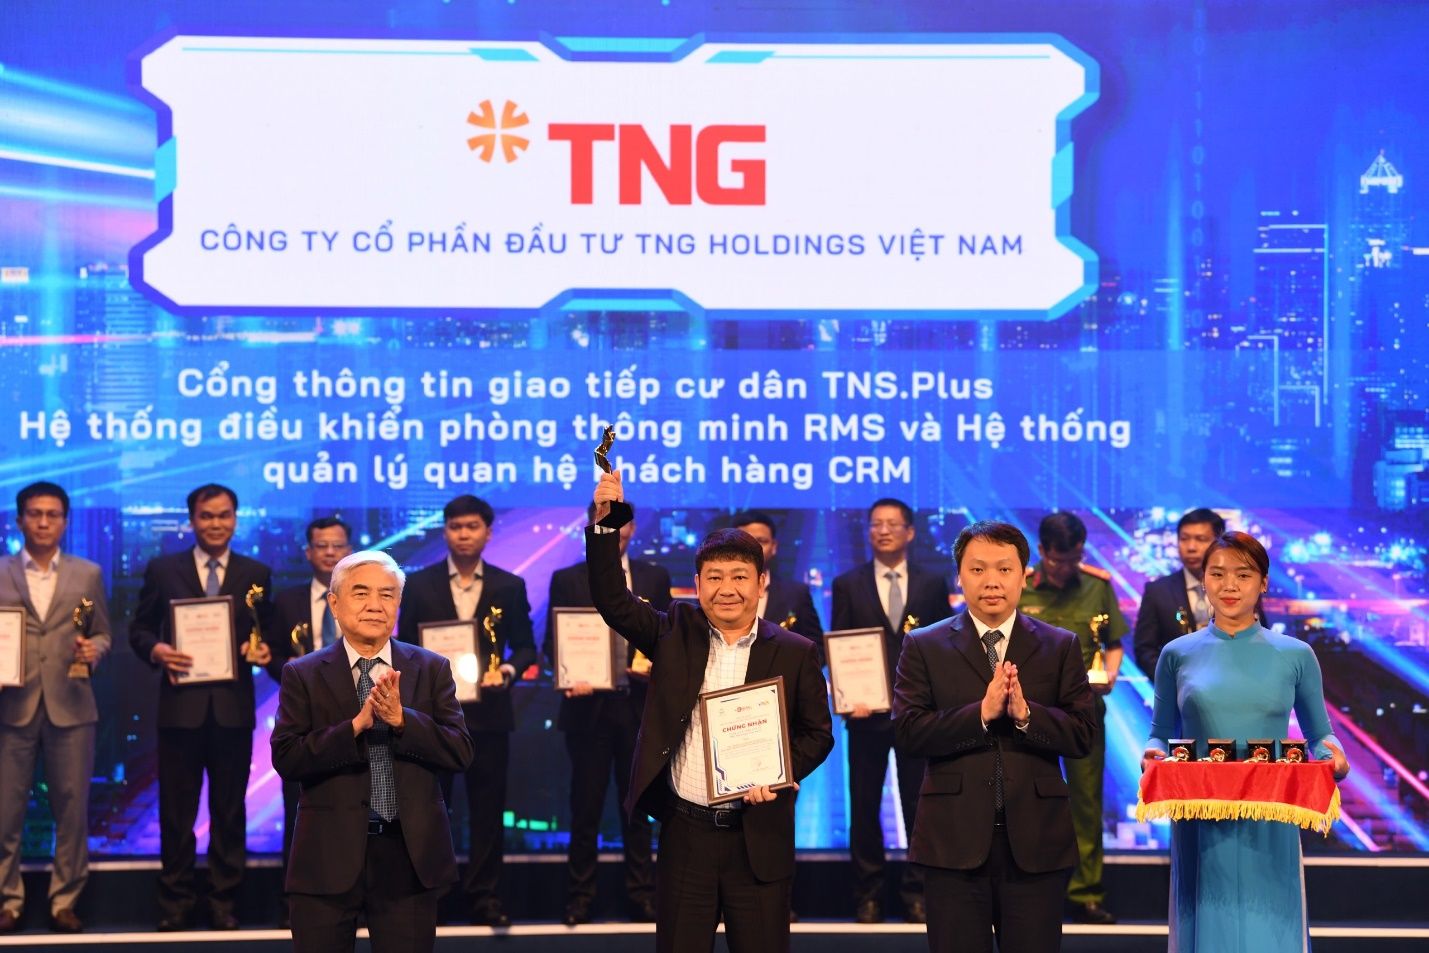 Đại diện TNG Holdings Vietnam nhận giải thưởng “Doanh nghiệp chuyển đổi số xuất sắc”.